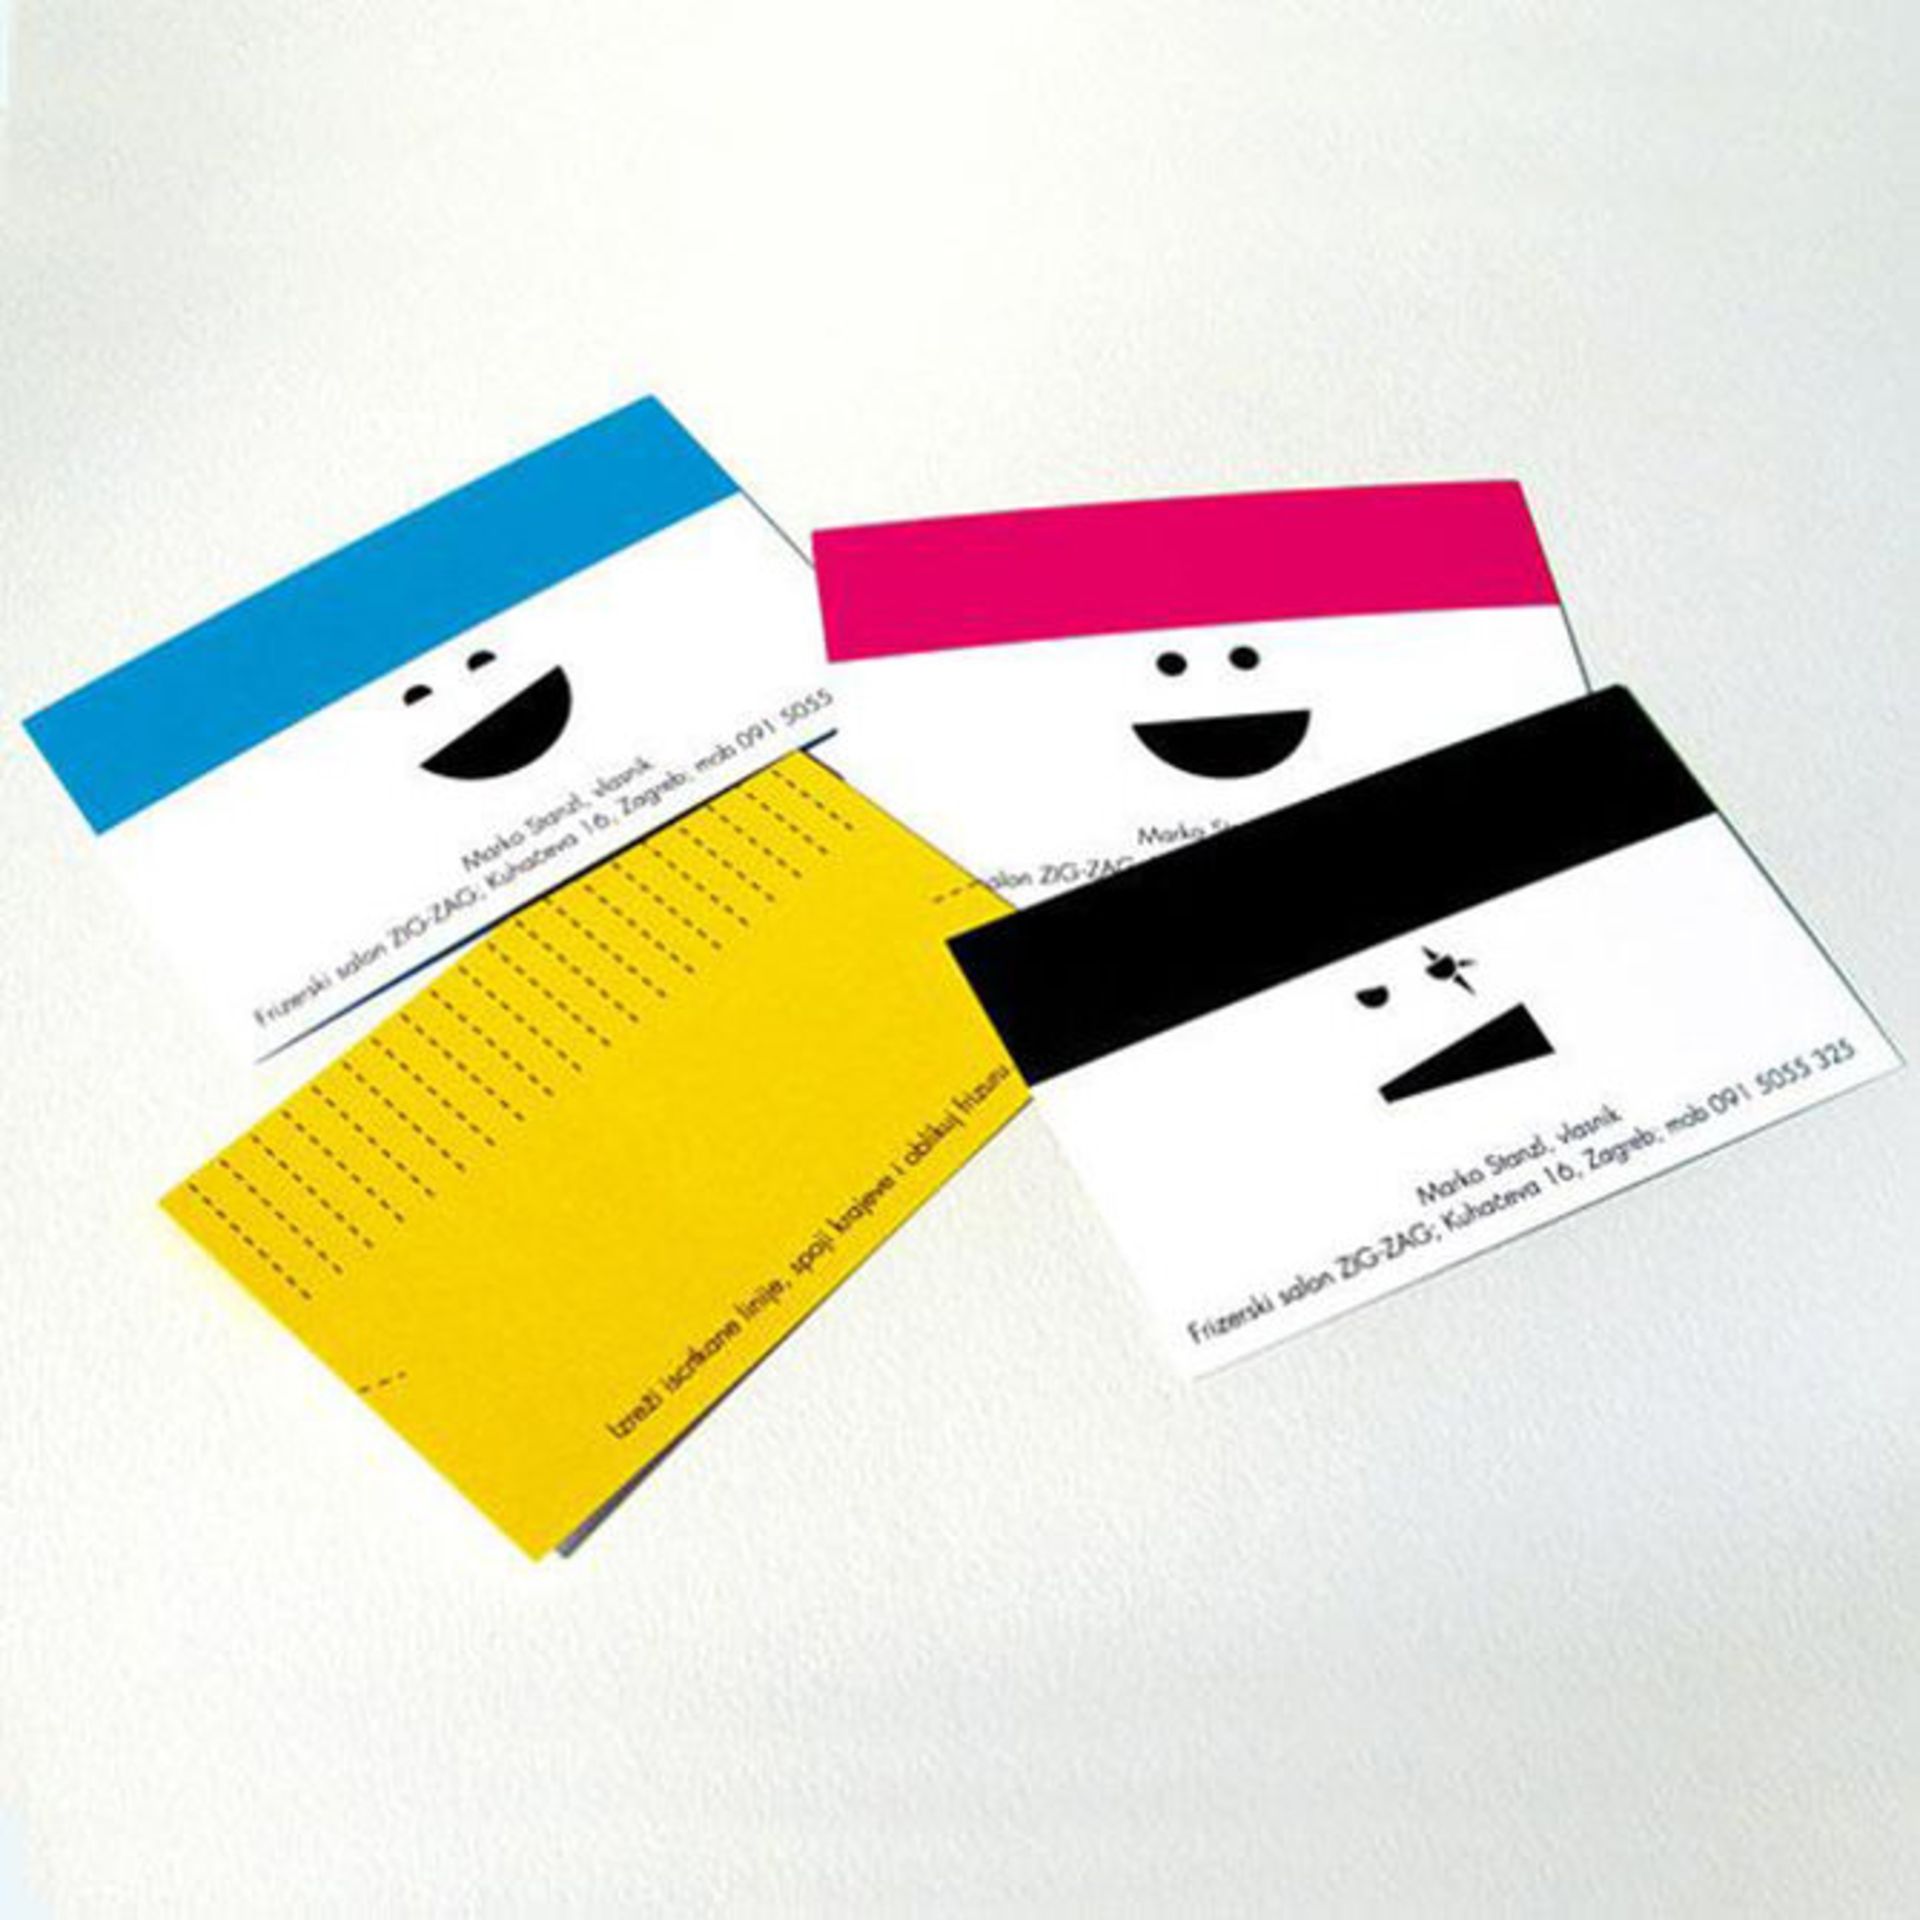 مرجع متخصصين ايران creative-business-cards-10-1